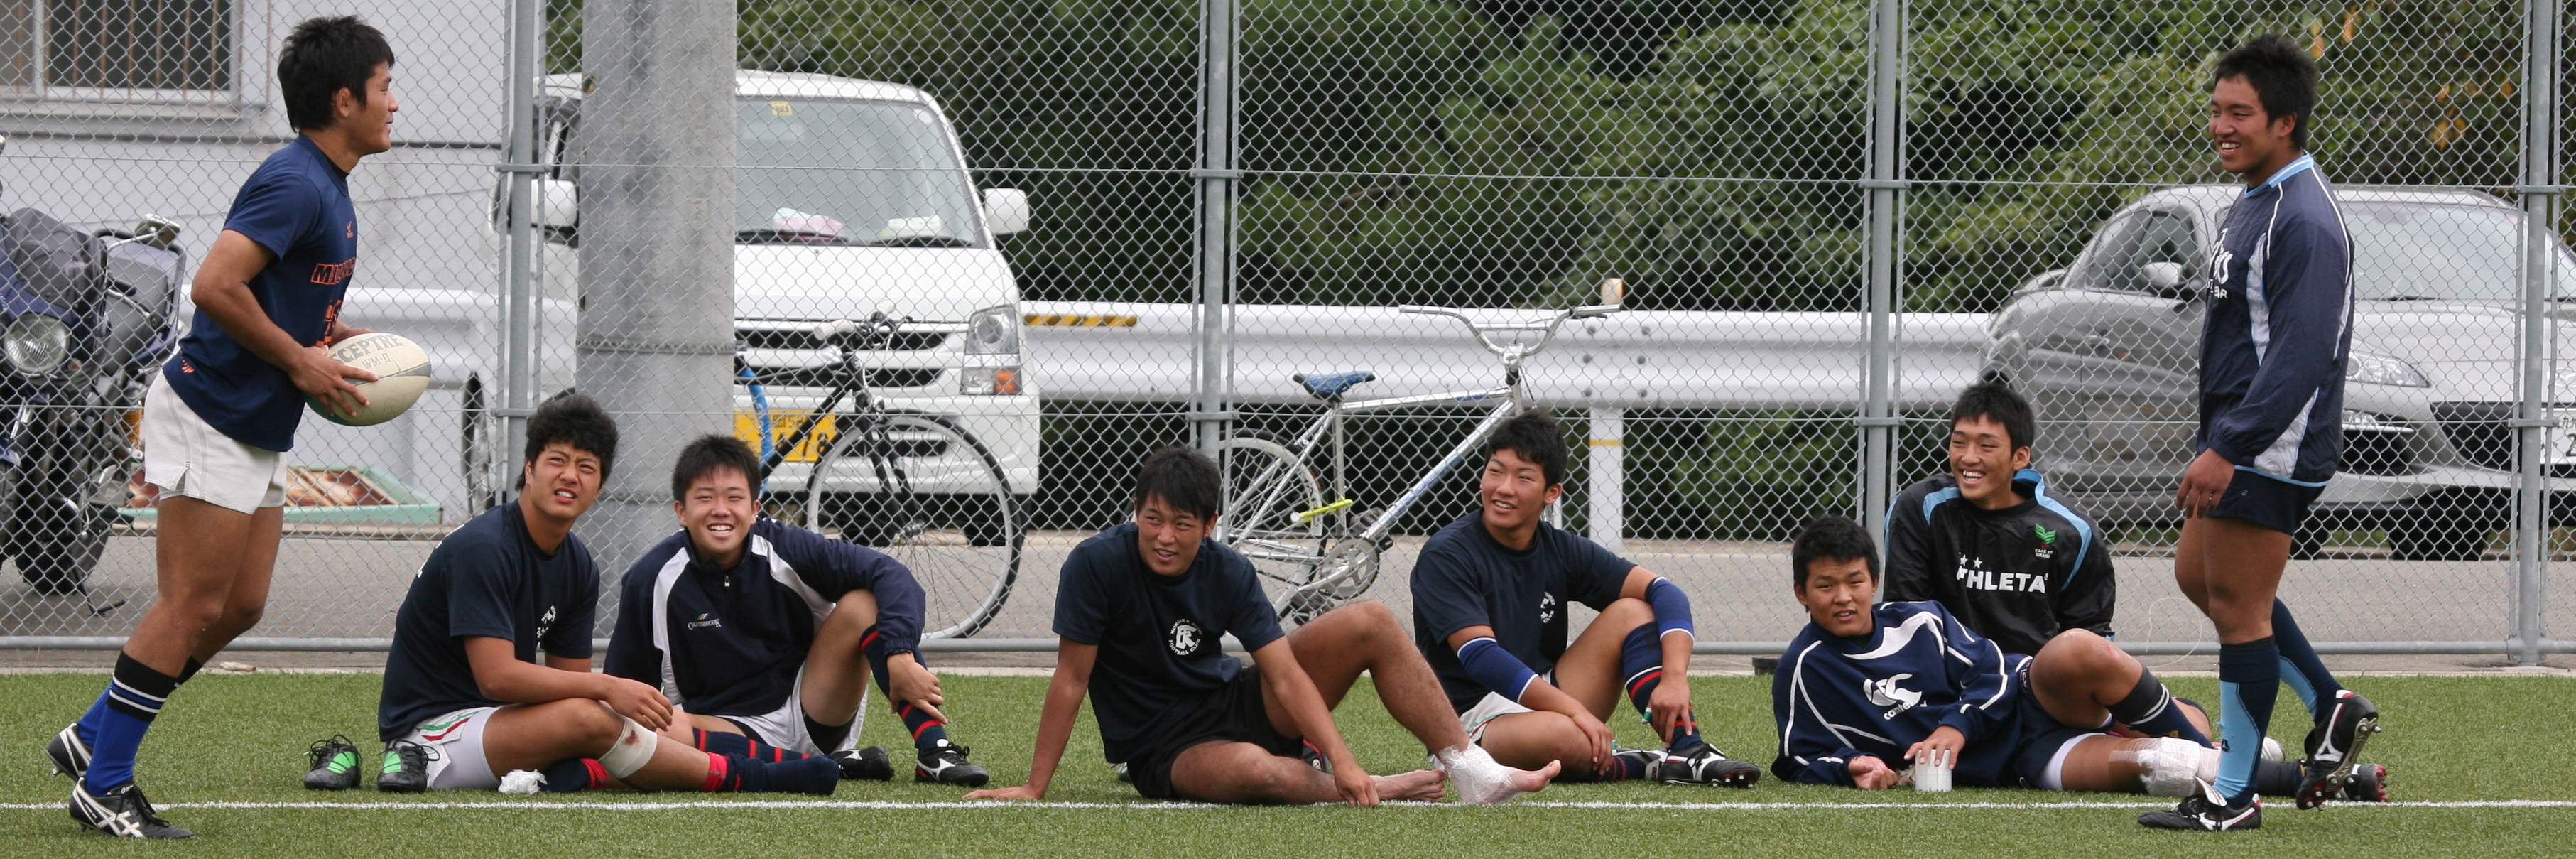 http://kokura-rugby.sakura.ne.jp/2011.10.2-14A.JPG